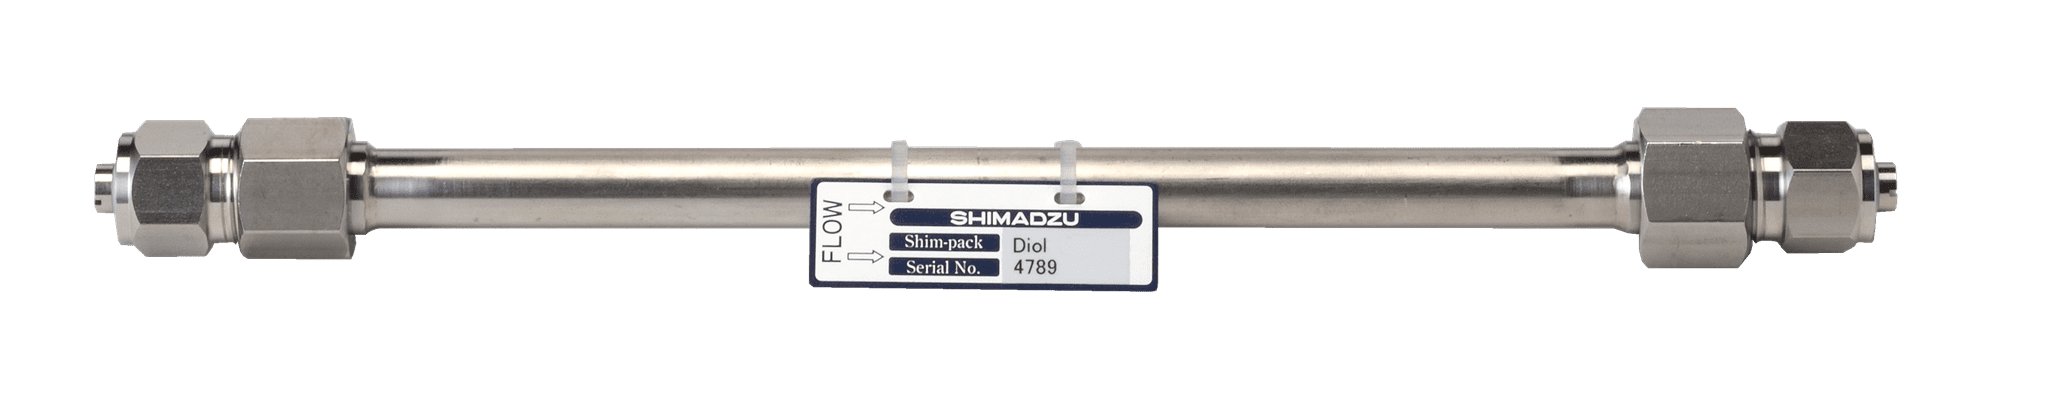 Image de Shim-pack Diol-300; 5 µm; 500 x 7.9